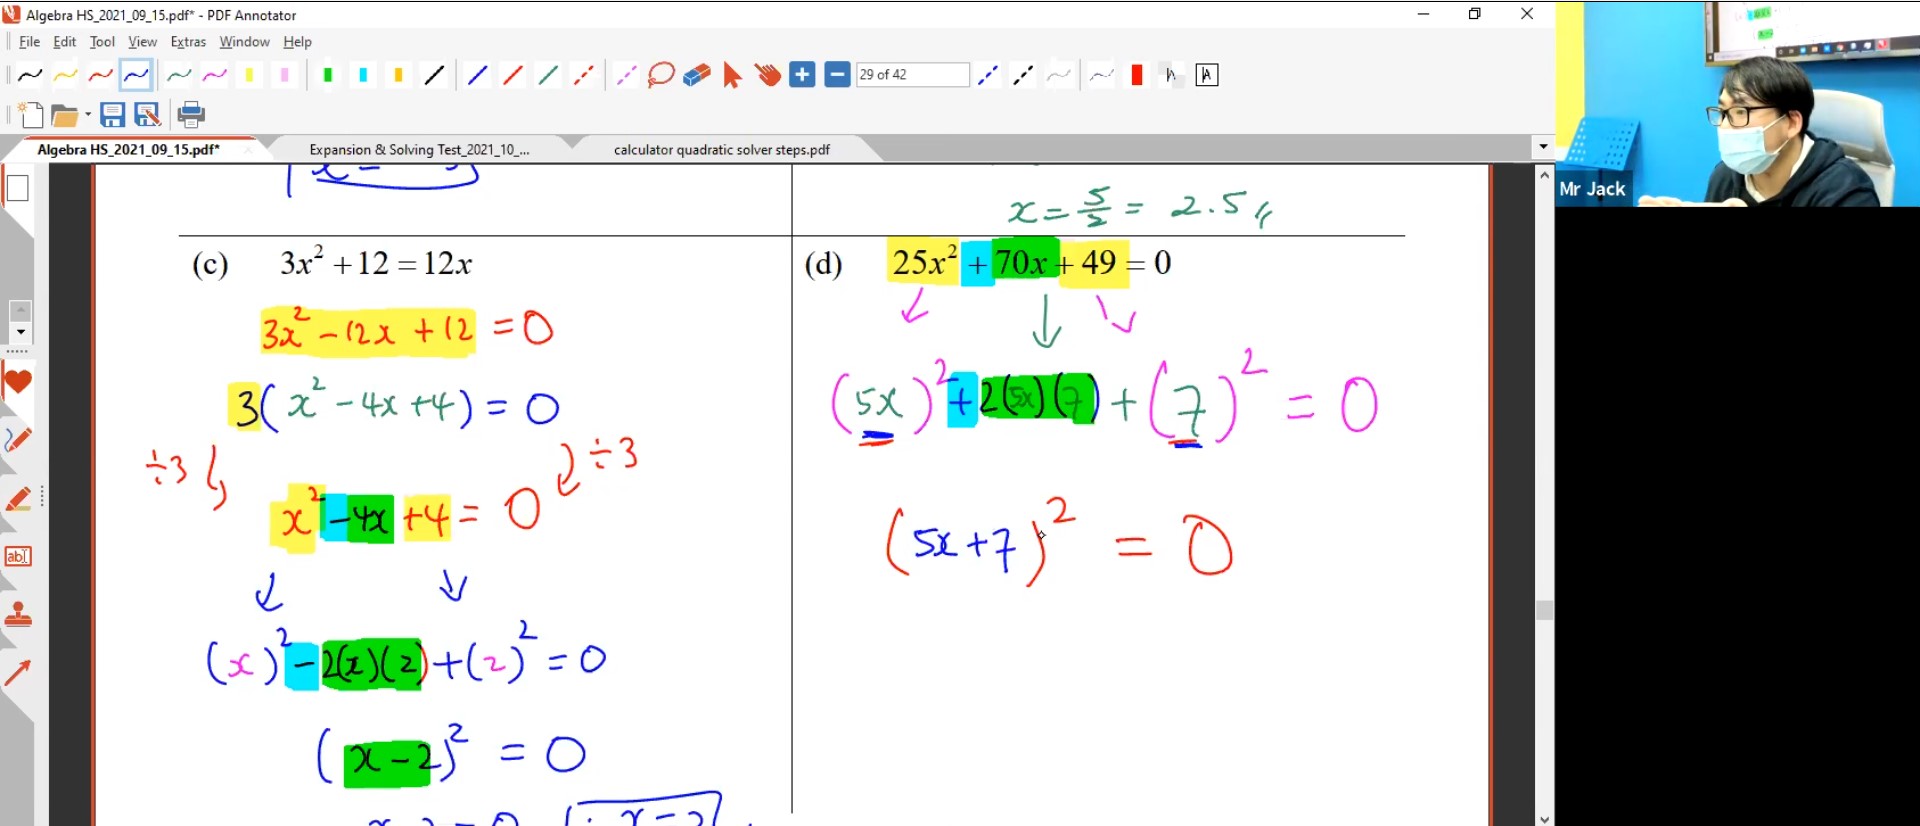 45. Maths Headstart L2: Solving Quadratic Equations [2021]